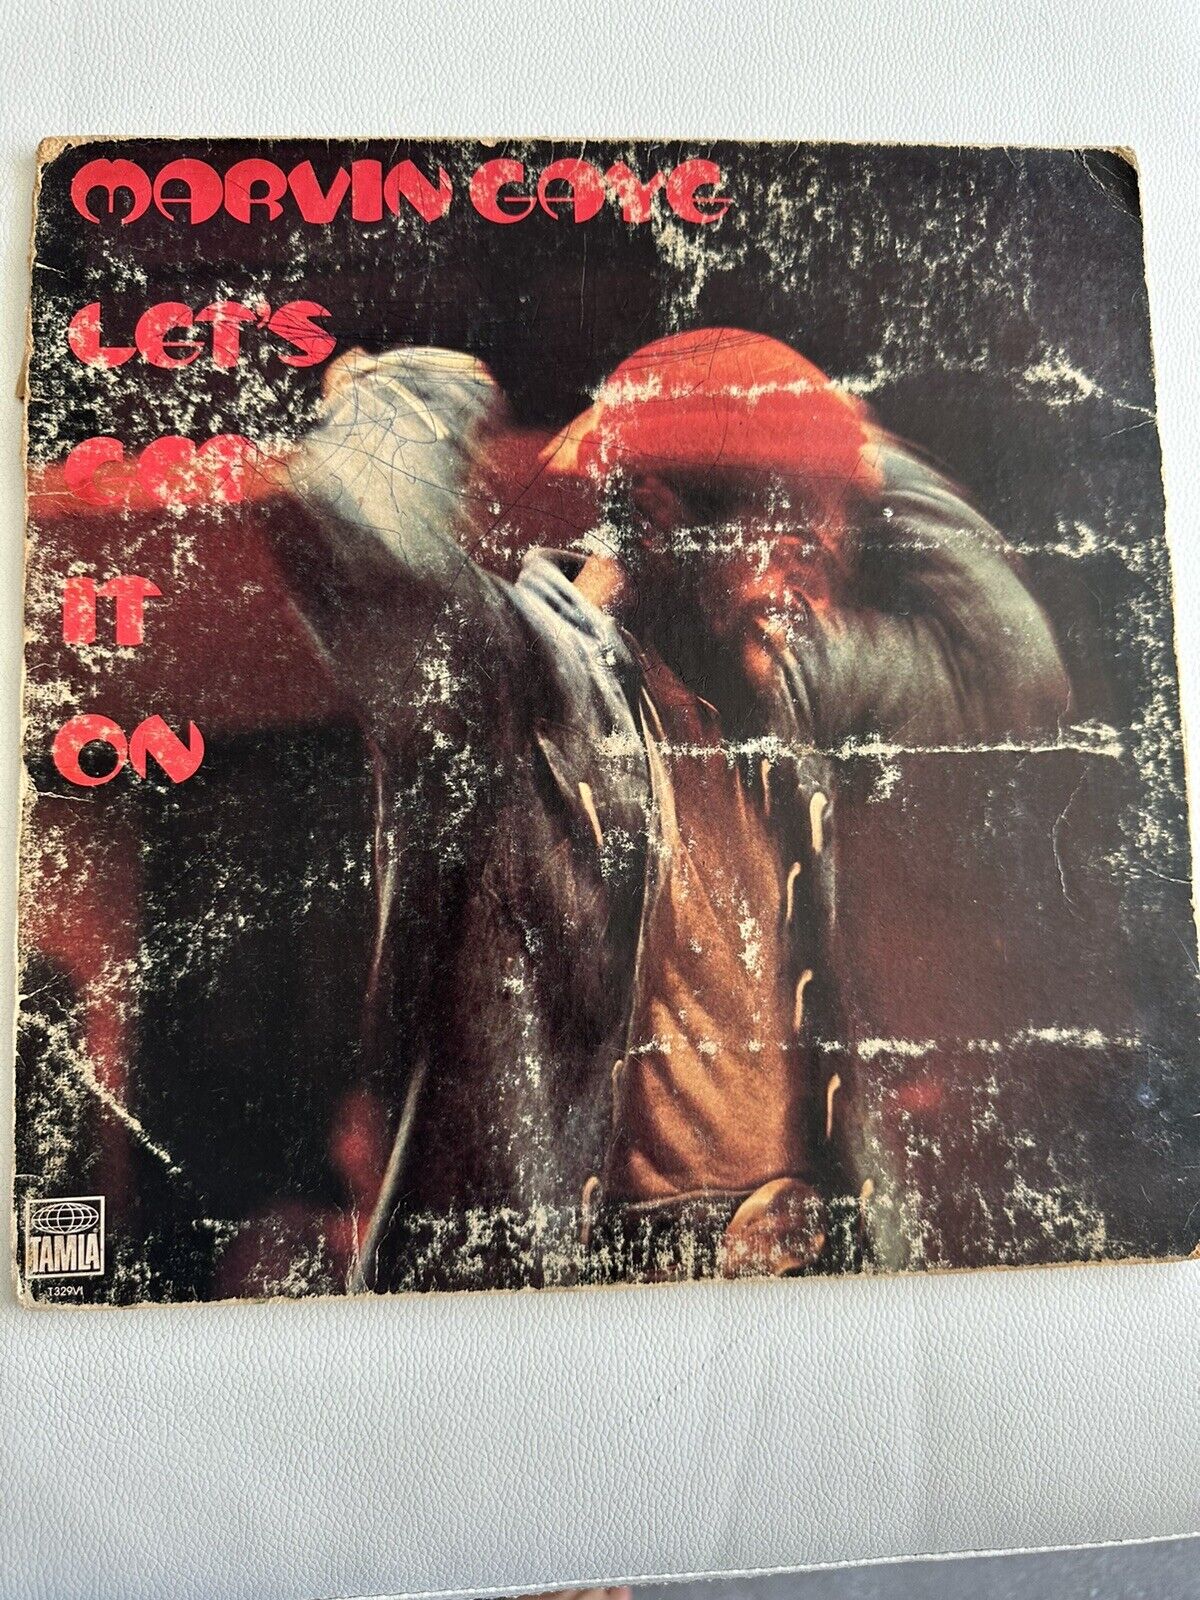 Marvin Gaye - Let's Get It On LP Vinyl 1973  Motown M5-192V1B  Gatefold